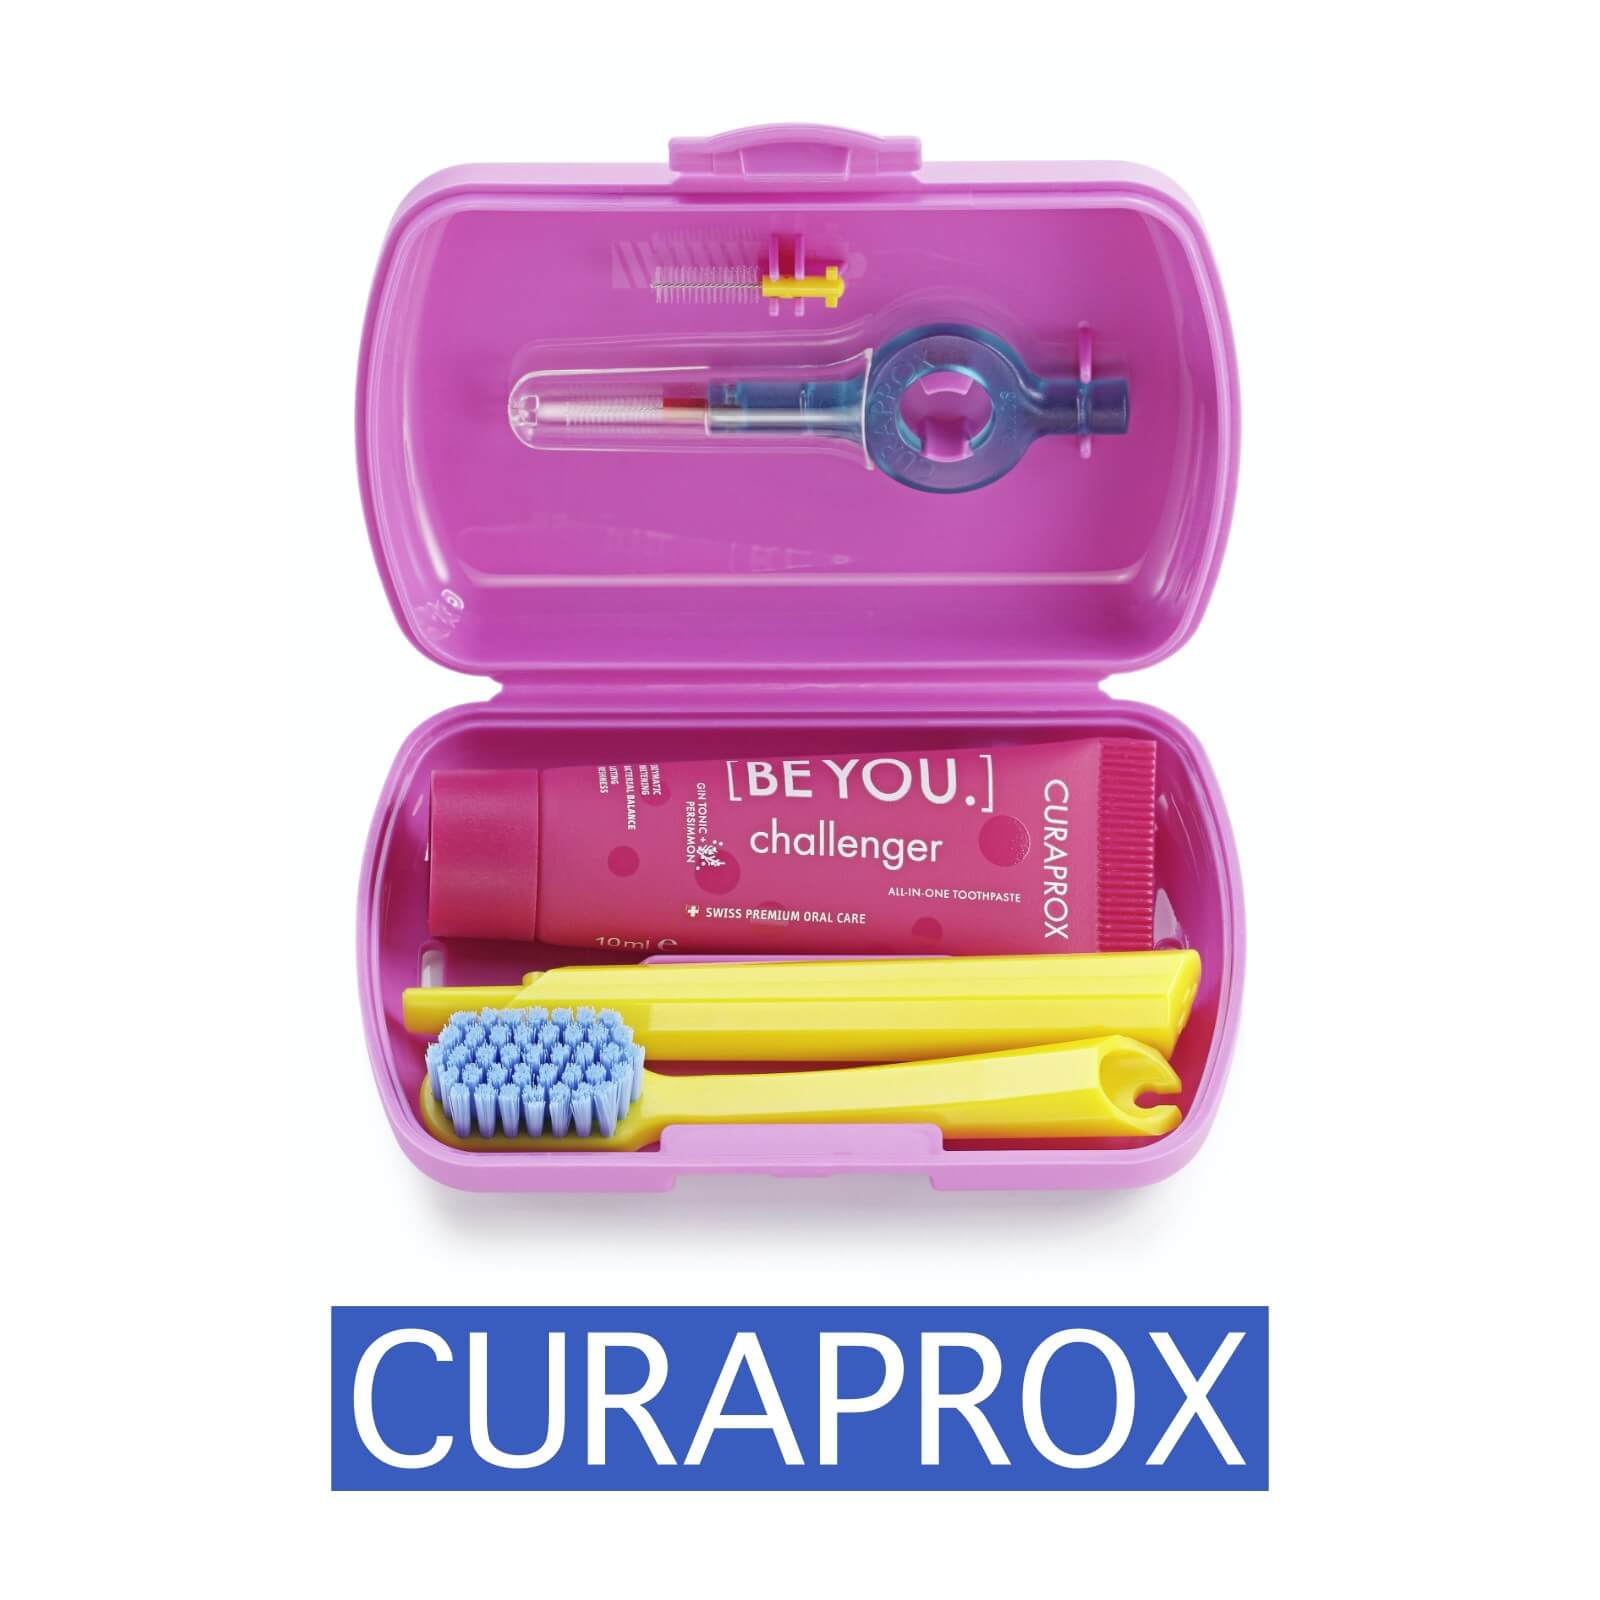 Curaprox - Stylisch bunte und innovative Zahnpflege - Alles für die perfekte Mundpflege 2